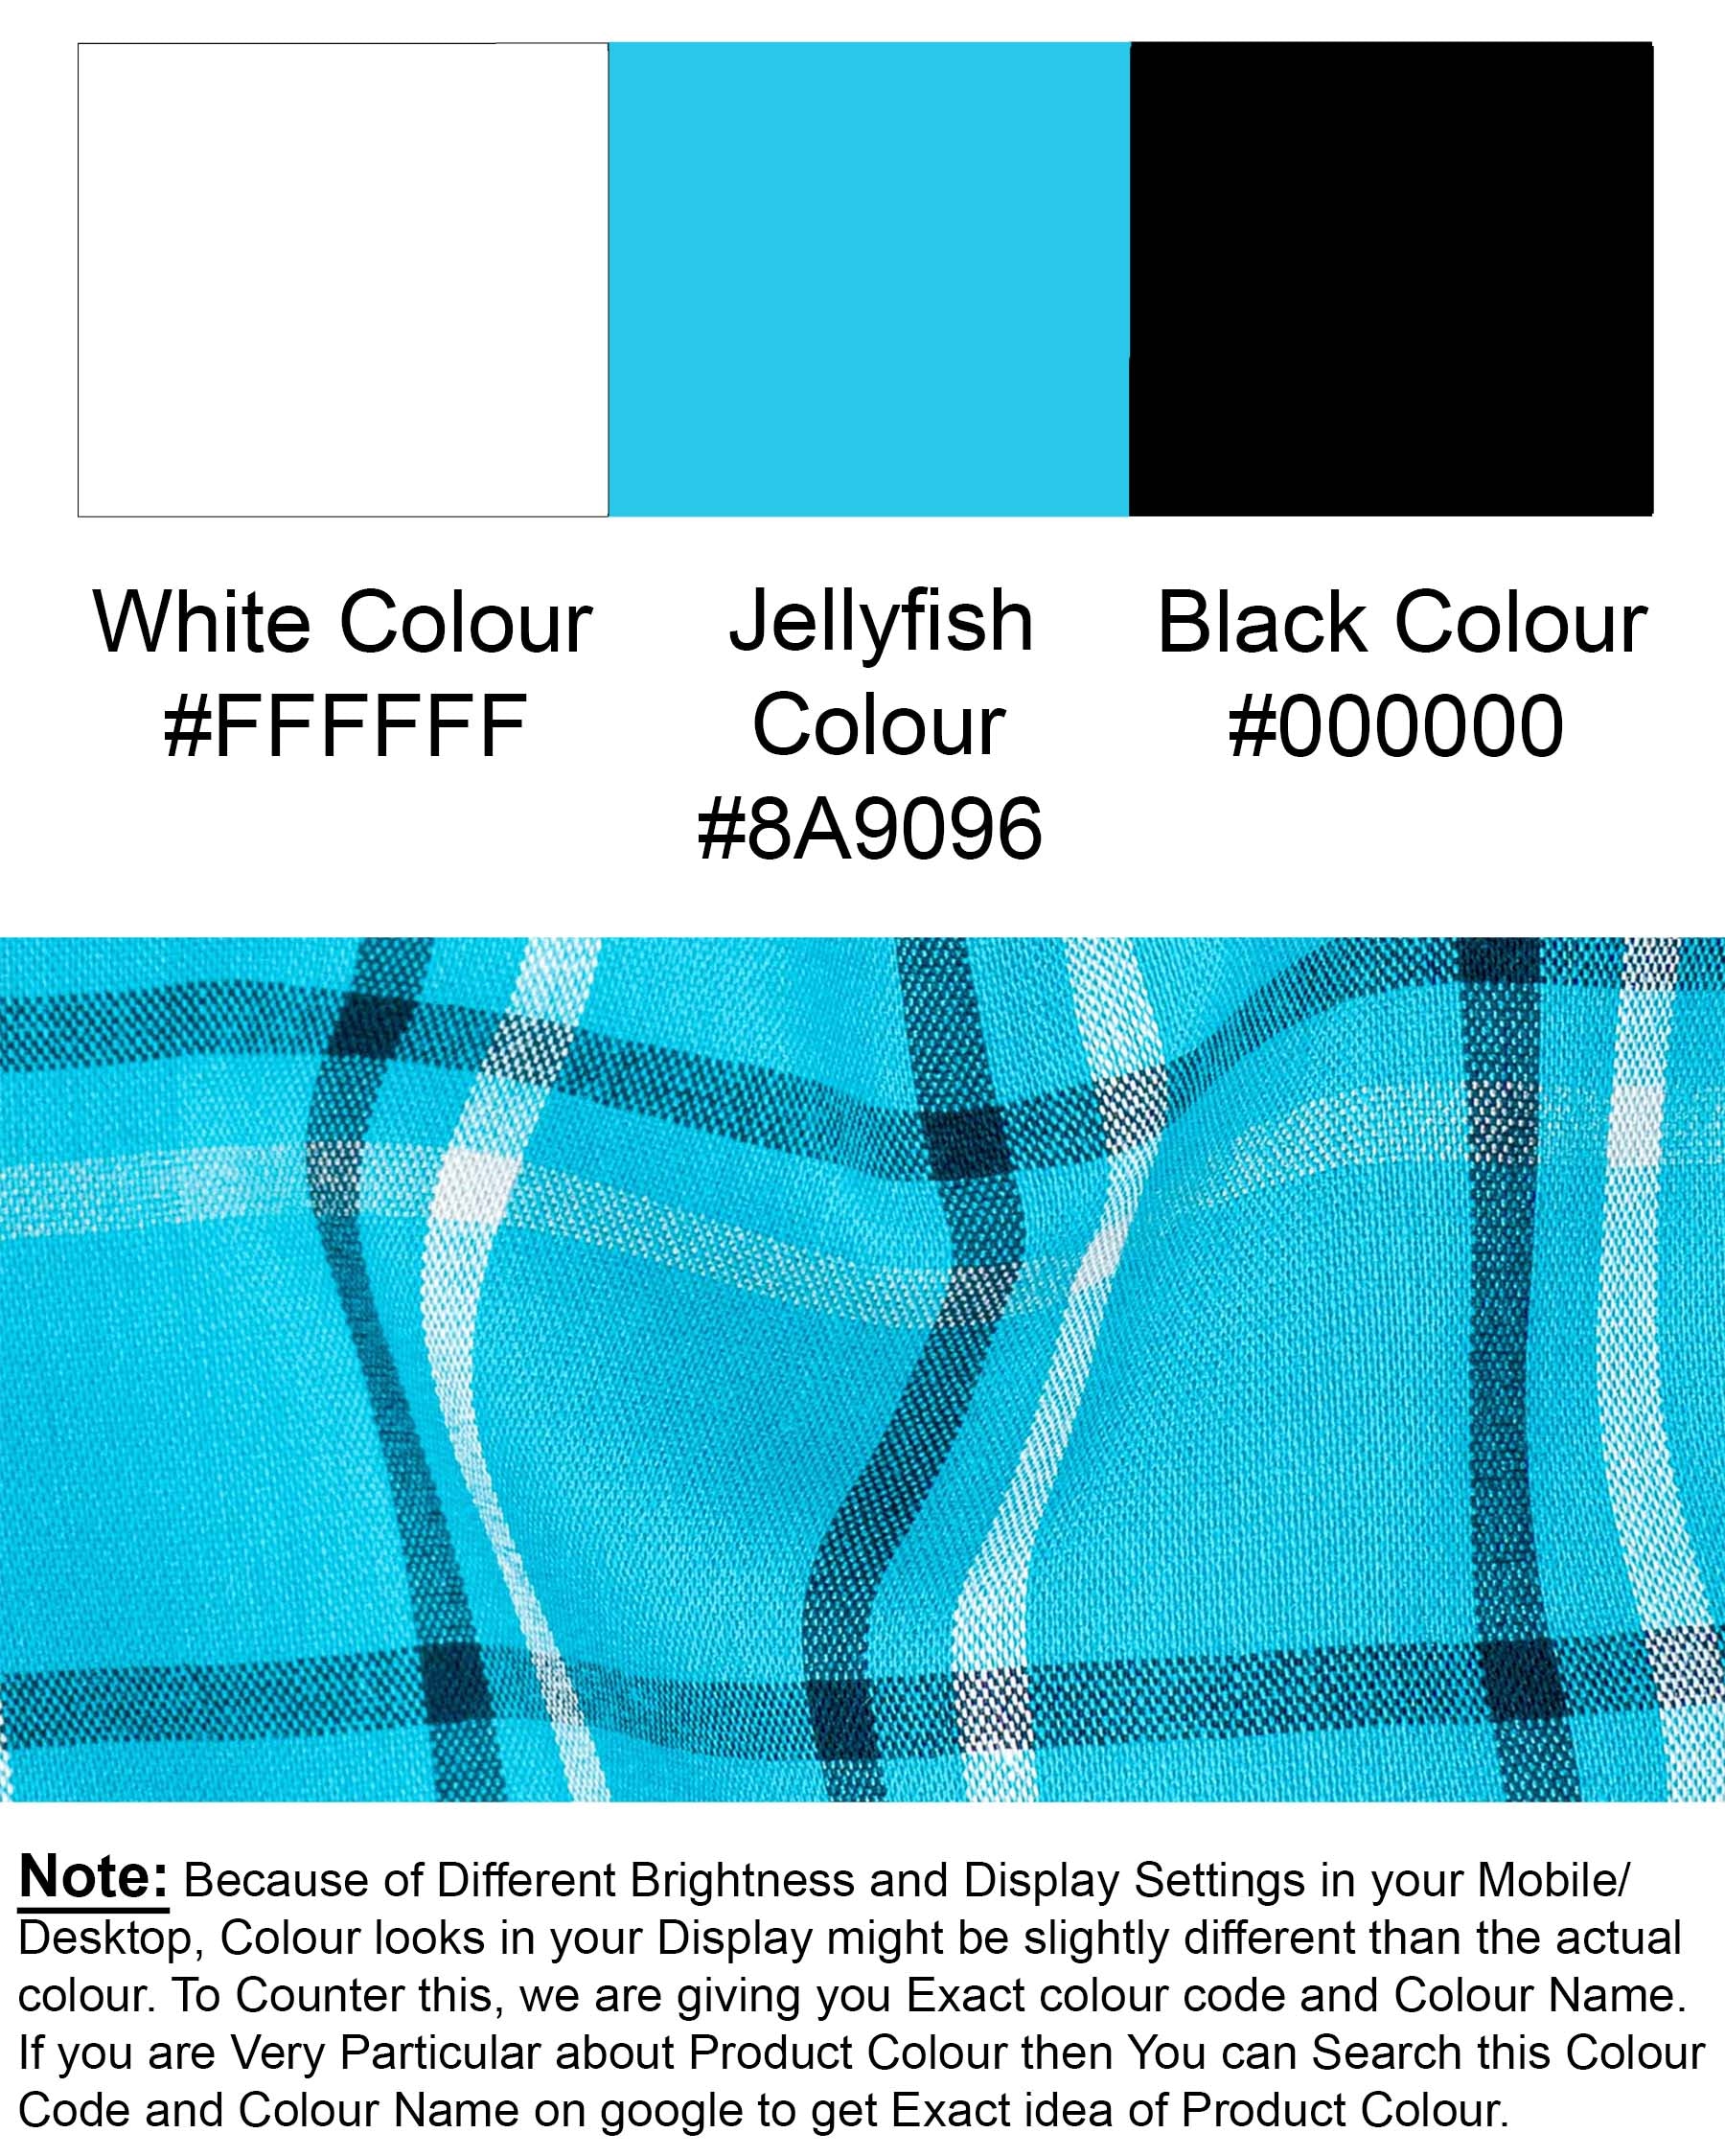 Jellyfish Blue with white Checkered Premium Cotton Shirt 6977-BLE-38,6977-BLE-38,6977-BLE-39,6977-BLE-39,6977-BLE-40,6977-BLE-40,6977-BLE-42,6977-BLE-42,6977-BLE-44,6977-BLE-44,6977-BLE-46,6977-BLE-46,6977-BLE-48,6977-BLE-48,6977-BLE-50,6977-BLE-50,6977-BLE-52,6977-BLE-52